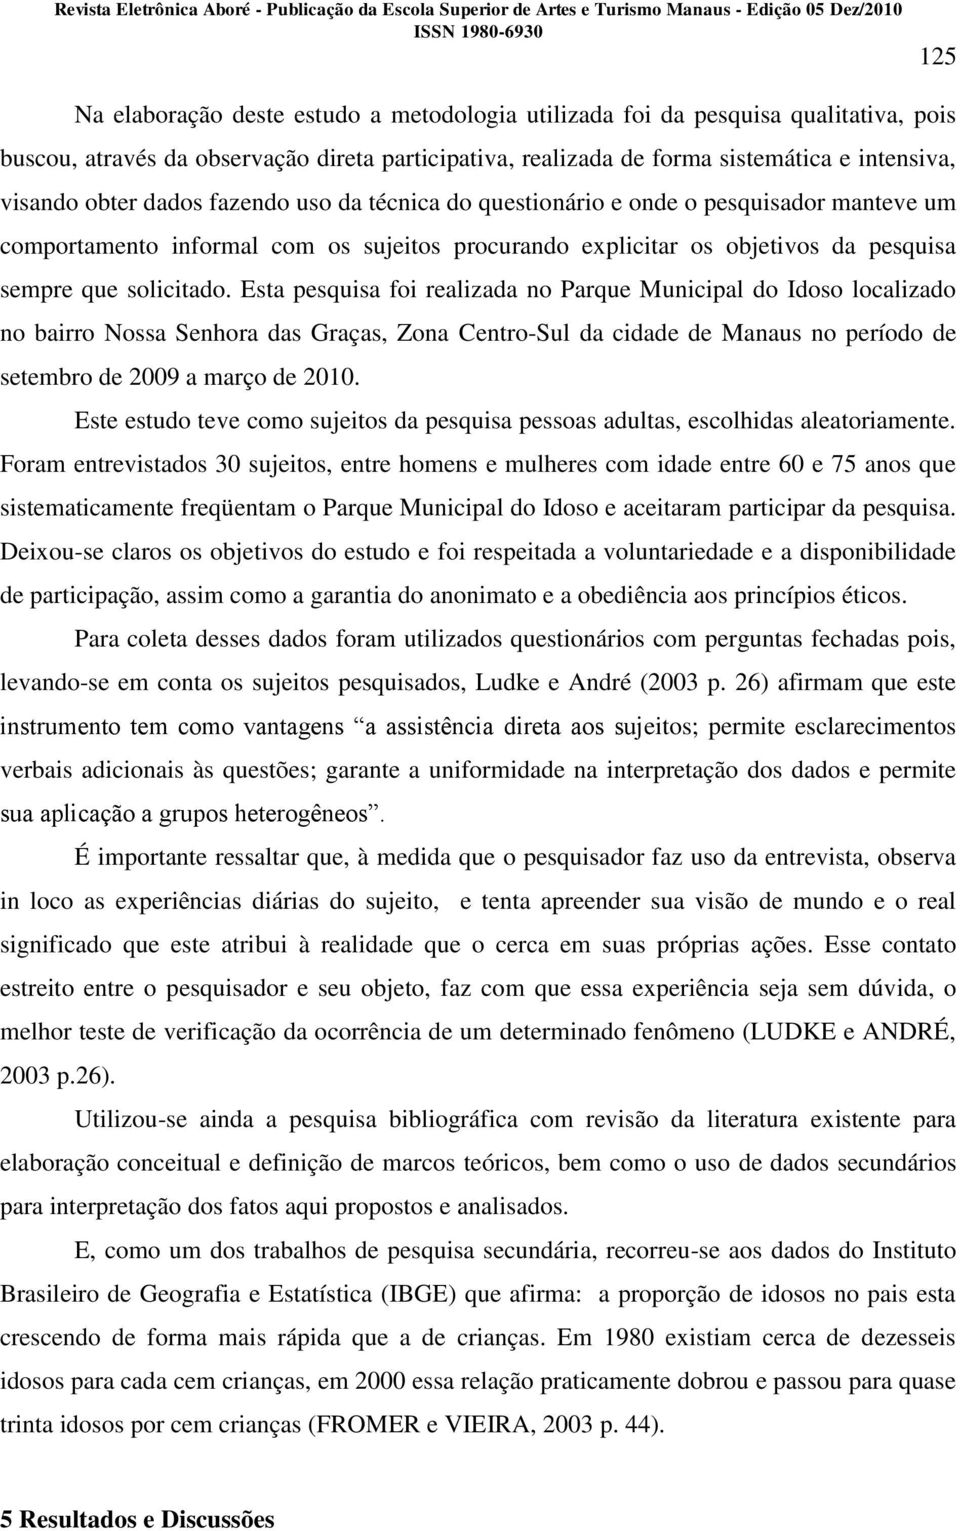 Esta pesquisa foi realizada no Parque Municipal do Idoso localizado no bairro Nossa Senhora das Graças, Zona Centro-Sul da cidade de Manaus no período de setembro de 2009 a março de 2010.